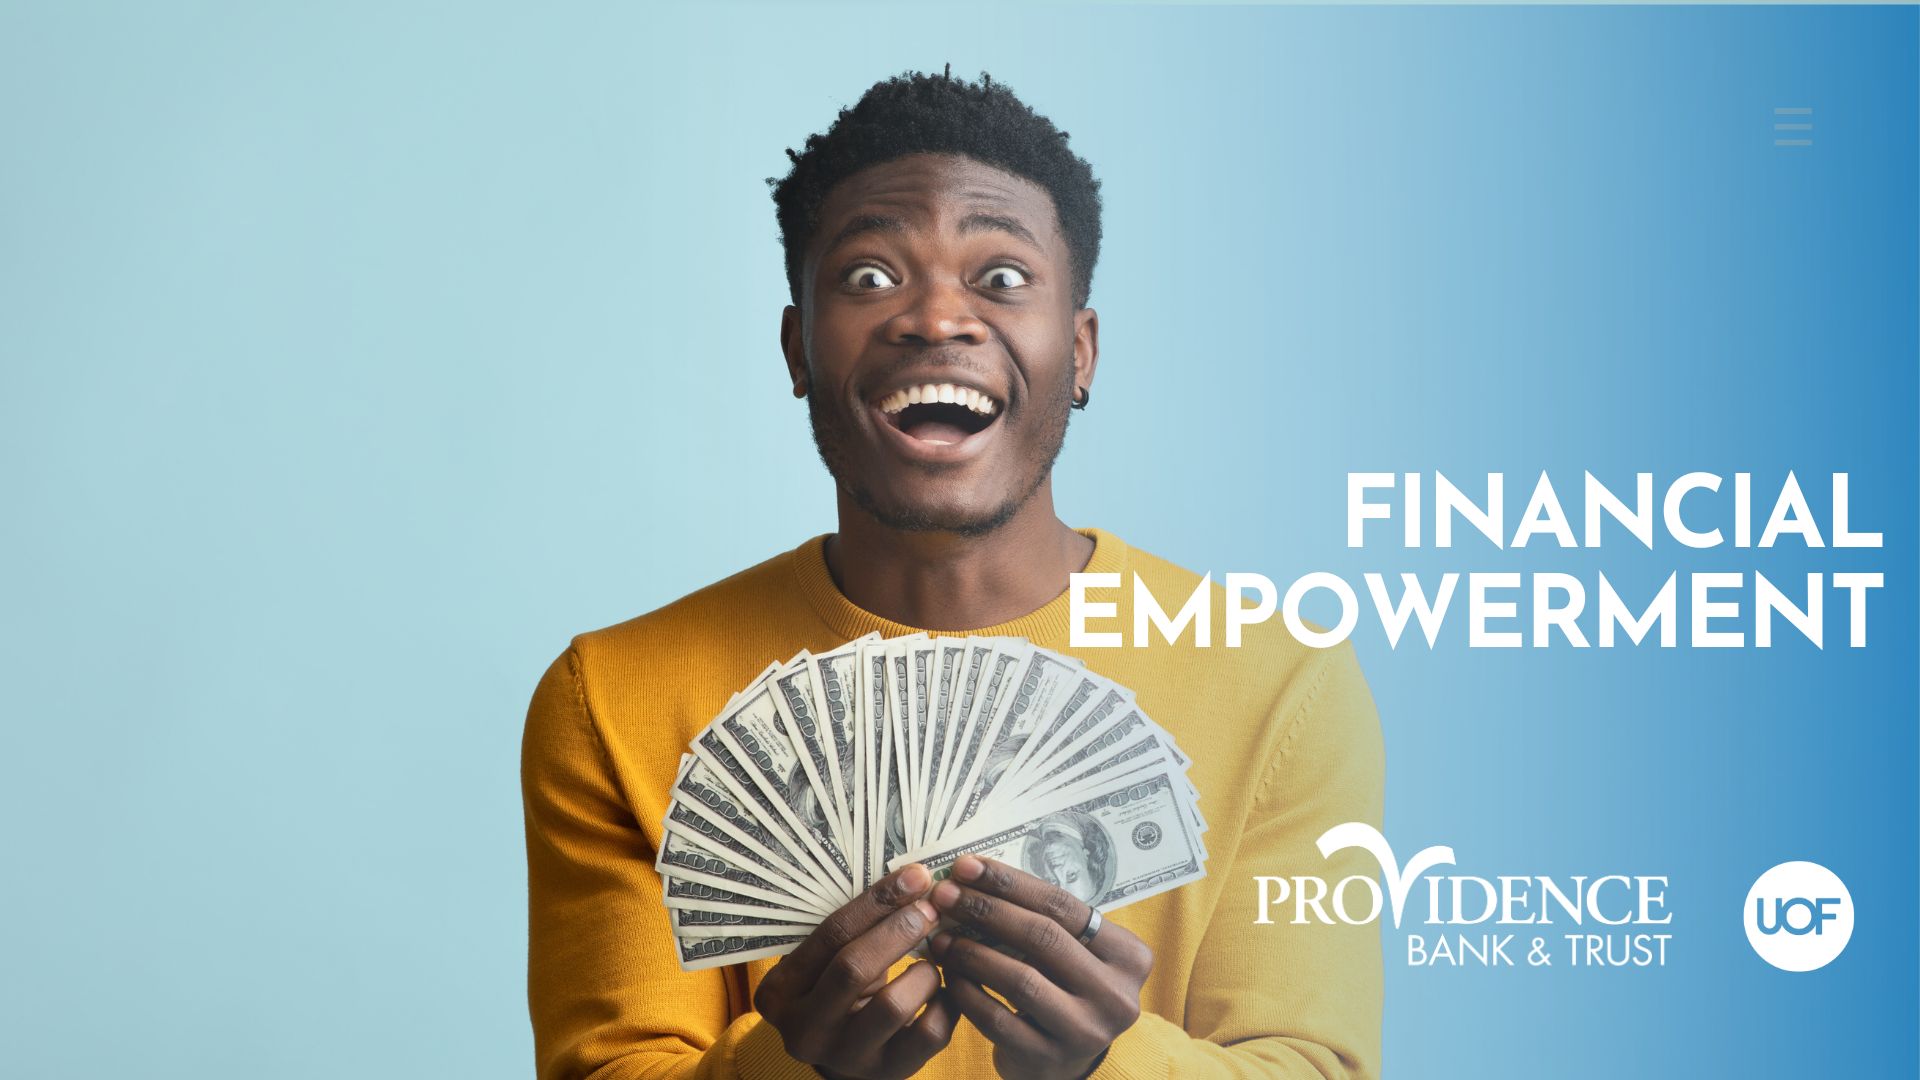 Financial Empowerment